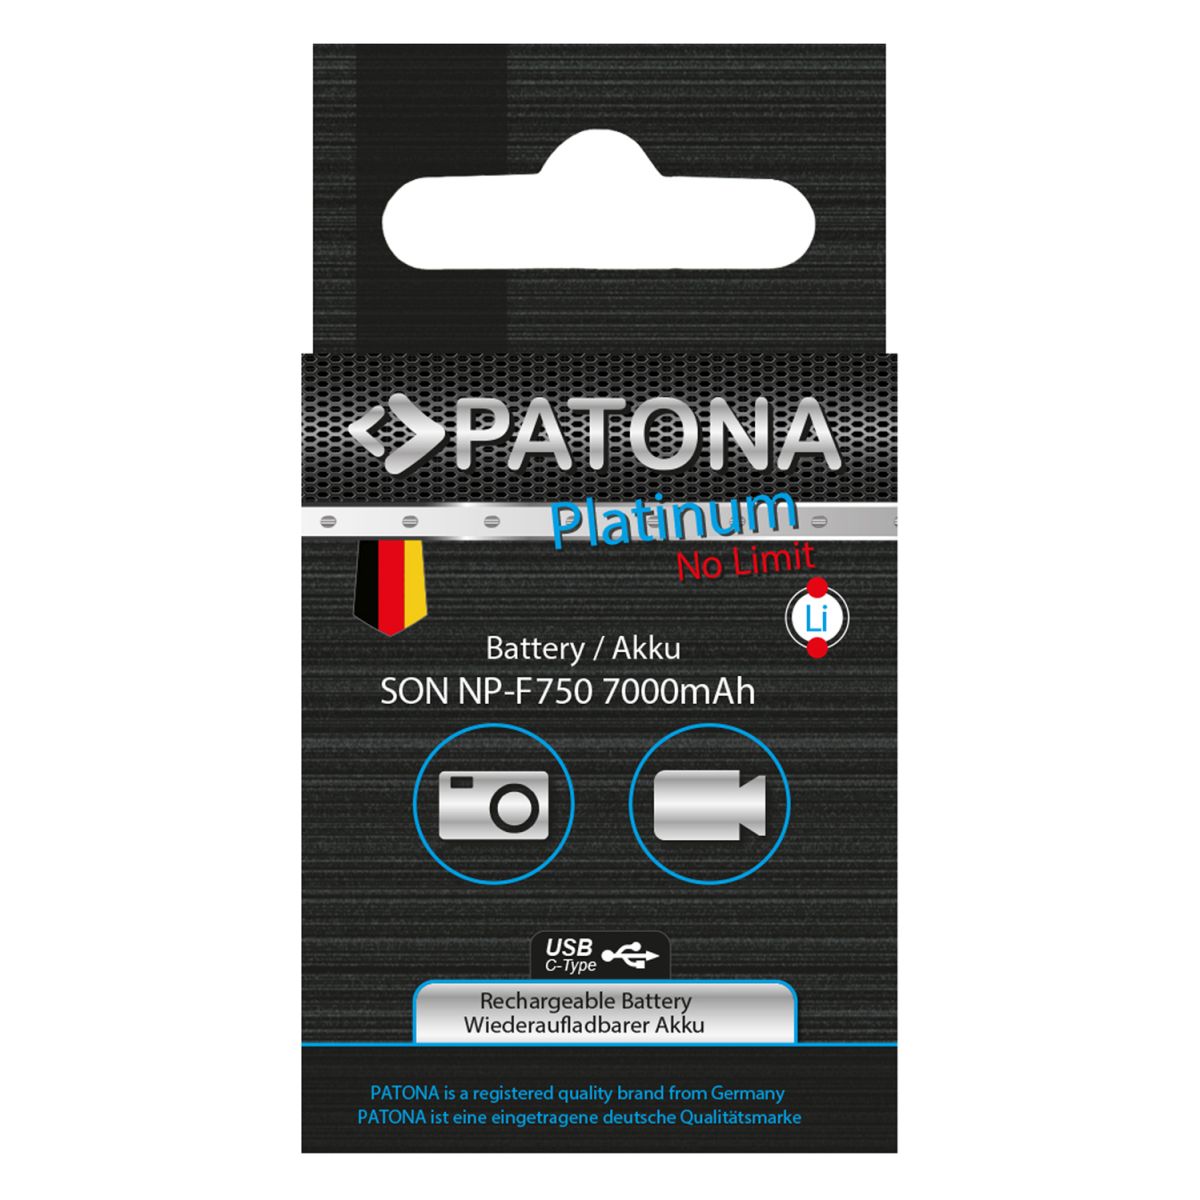 Patona Platinum Akku mit USB-C Input für Sony NP-F750 F330 F530 F550 F930 F920